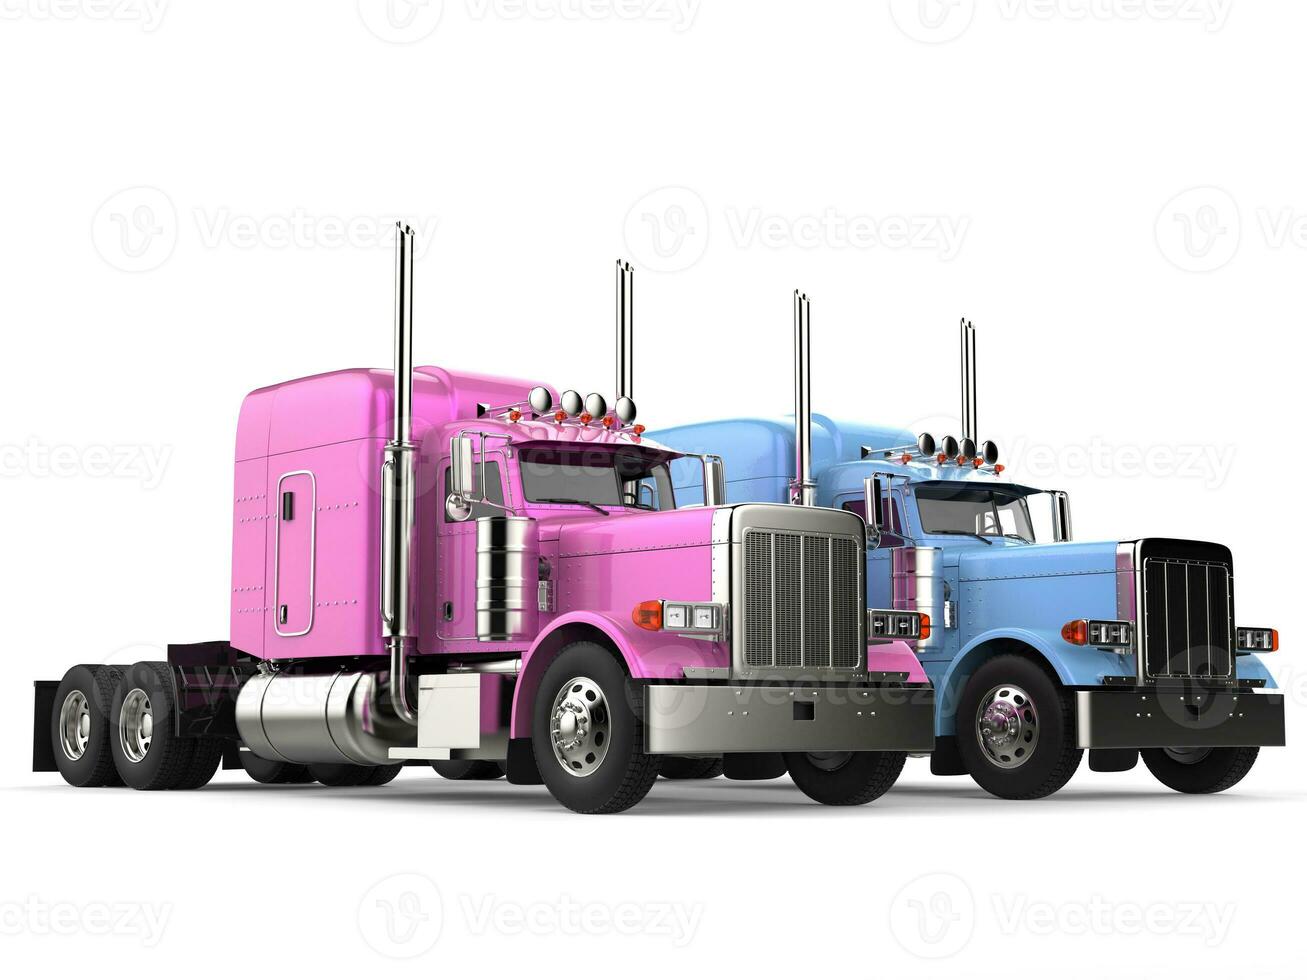 Rosa e azul moderno grande semi - reboque caminhões foto